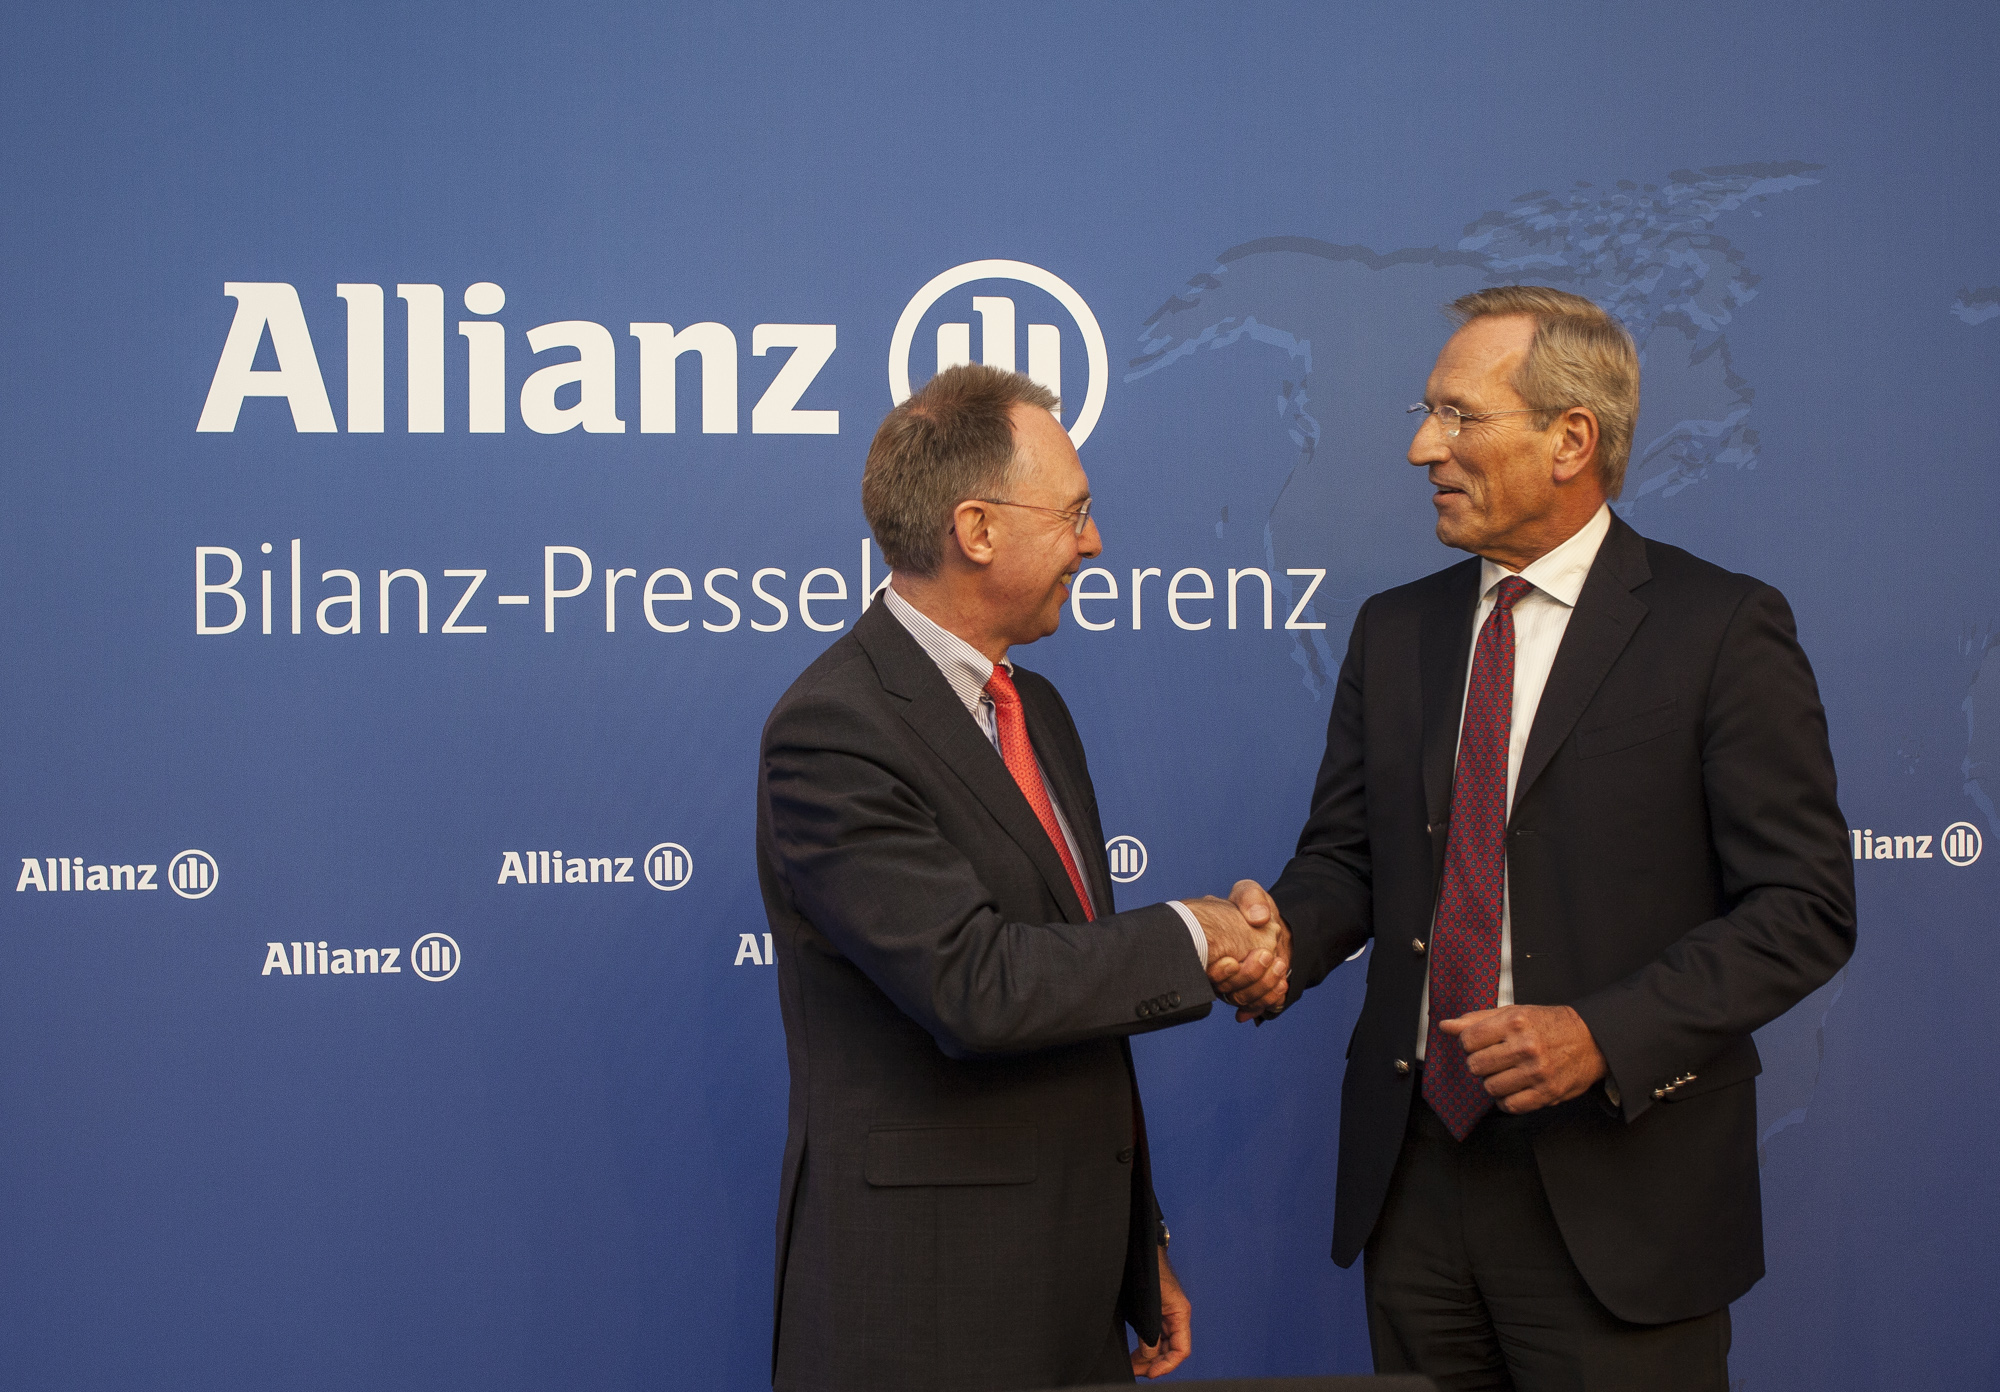 Allianz Board Member Dieter Wemmer and CEO Michael Diekmann (from left)